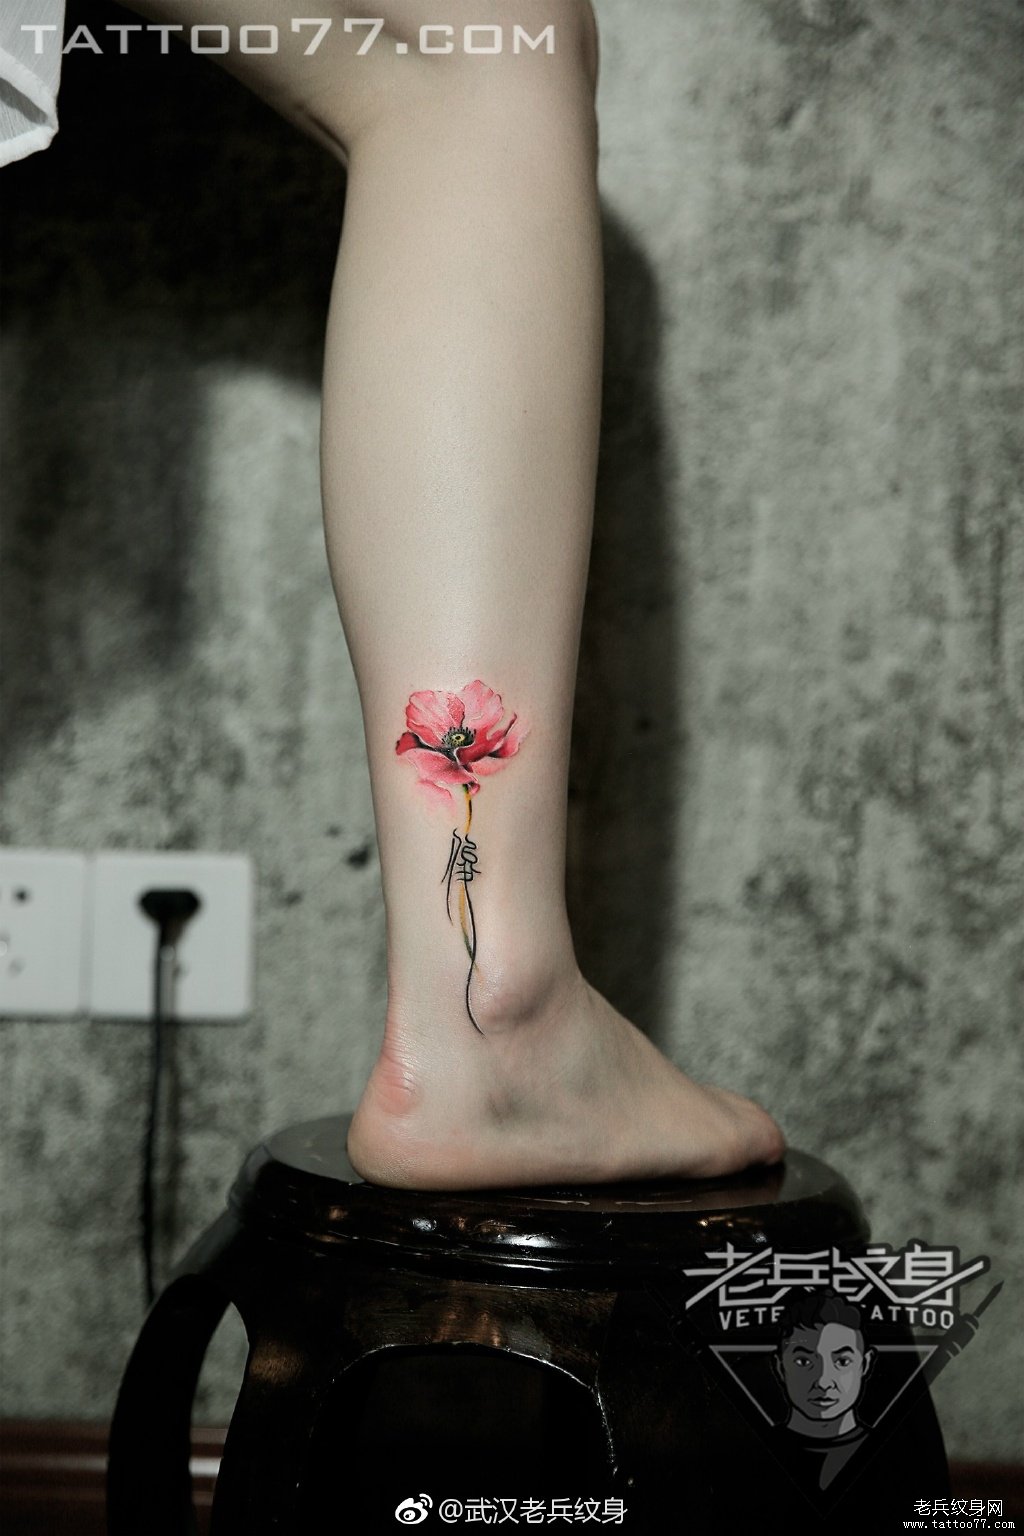 脚踝罂粟花纹身图案作品